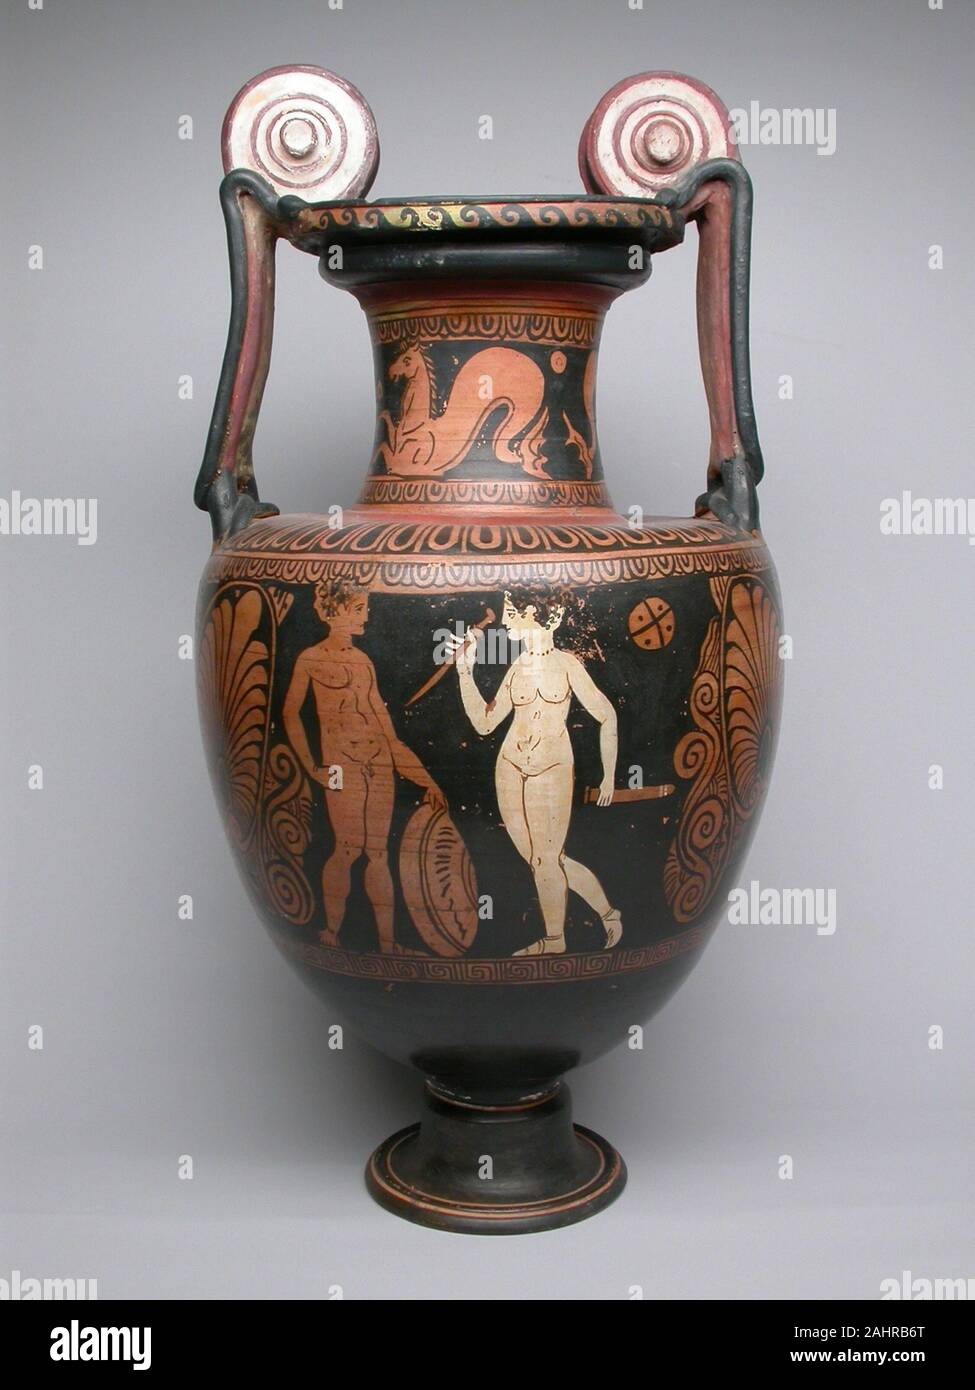 Antike Griechische. Amphora (Storage Jar). 400 v. Chr. - 301 v. Chr.. In Italien. Terracotta, in Rot gehalten - Abbildung Technik mit ihren monumentalen Proportionen, weiß Spiralgehäuse Griffe, und rot-Abbildung Dekoration, dieser Amphora trägt eine verblüffende Ähnlichkeit zu Vasen aus Apulien an der Westküste des südlichen Italien. Jedoch, diese Vase gehört zu den Faliscan Kultur, die südlichste Nachbar der Etrusker in der Region der heutigen Toskana. Zusammen, die Etrusker und Faliscans würde gegen die römische Expansion Kampf. Die hohe Qualität und Popularität der Faliscan waren mit römischen Keramik Produktion wetteiferten, int Stockfoto